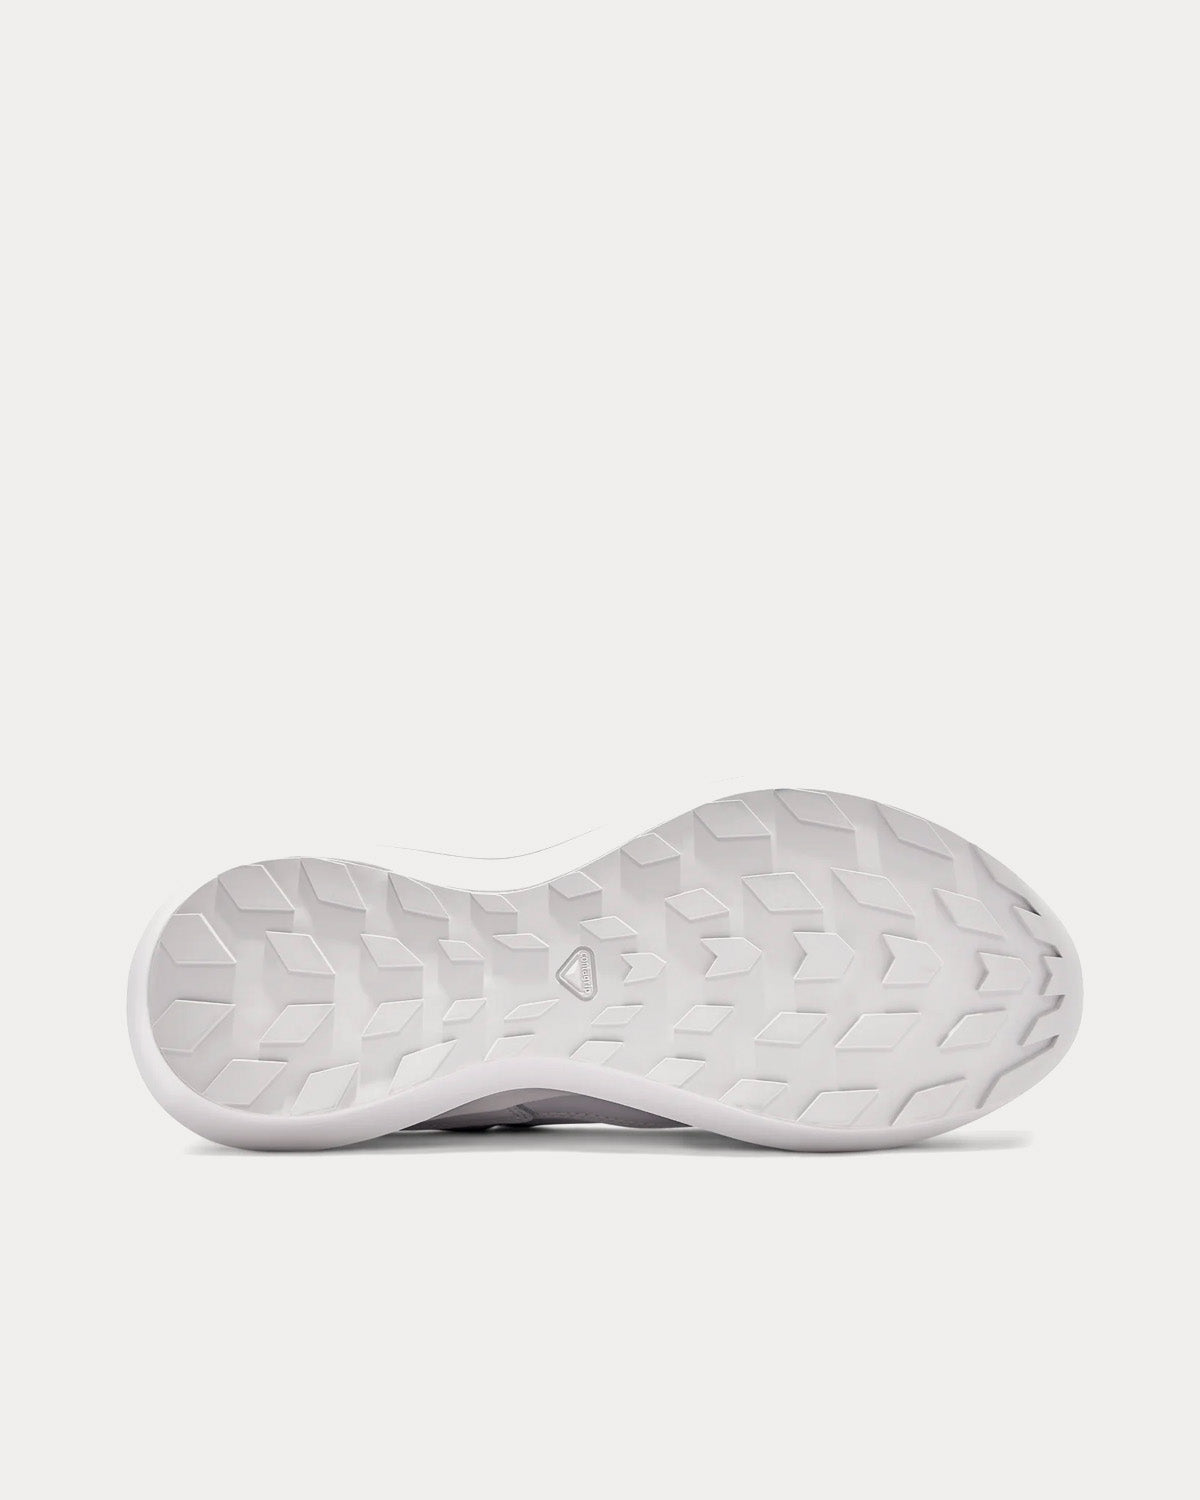 Salomon x Comme des Garçons - SR811 Platform Leather White Low Top Sneakers